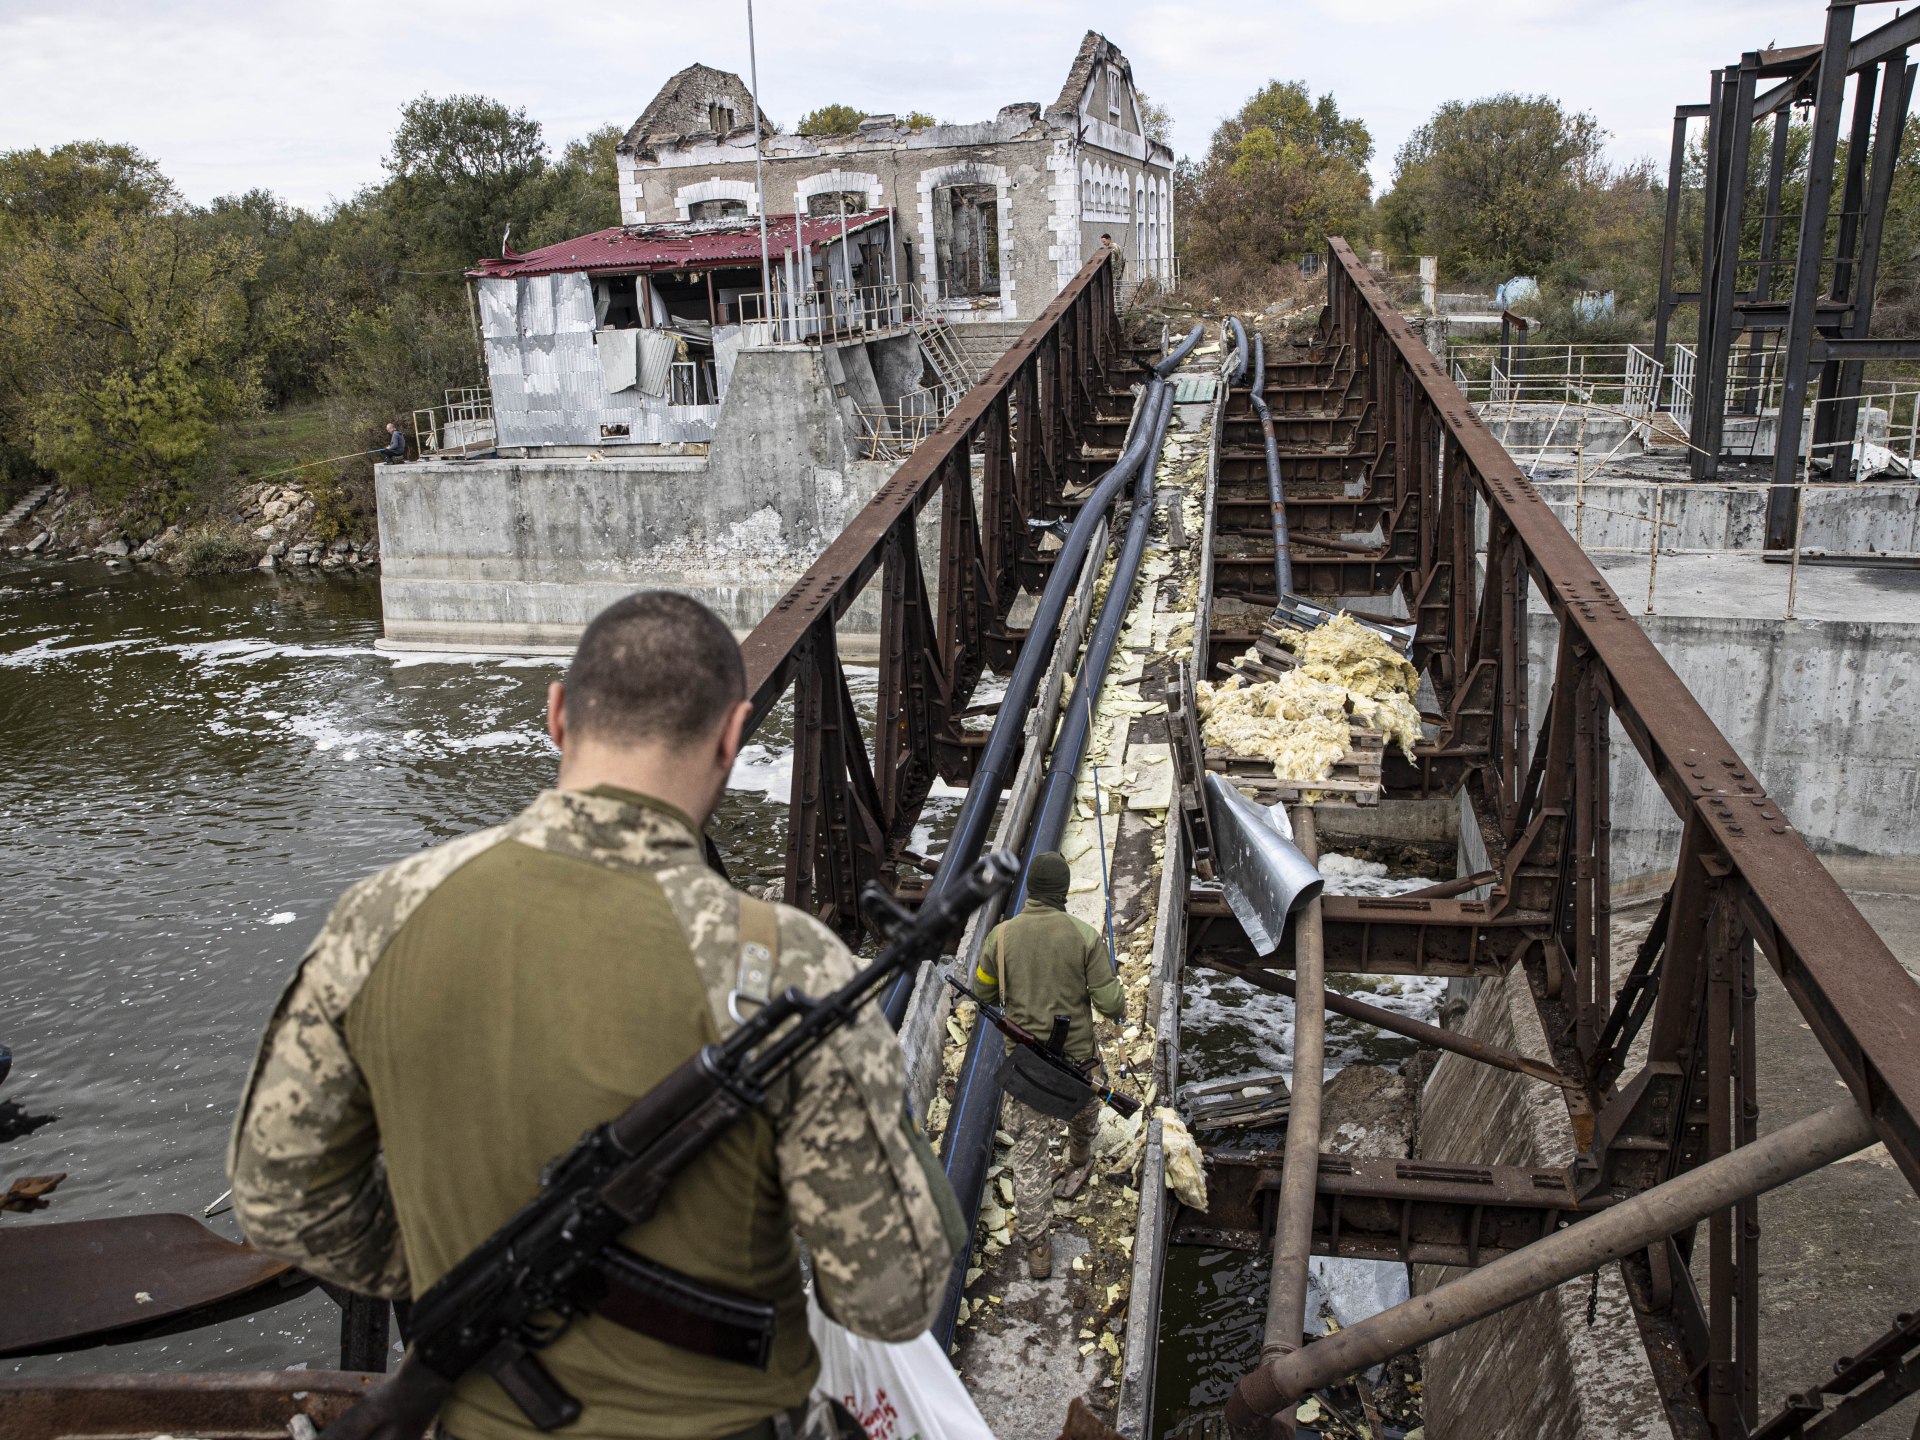 الجيش الأوكراني يتحدث عن "أنباء إيجابية" في الجنوب وبايدن يصف قرار روسيا وقف اتفاق الحبوب بأنه "مشين"